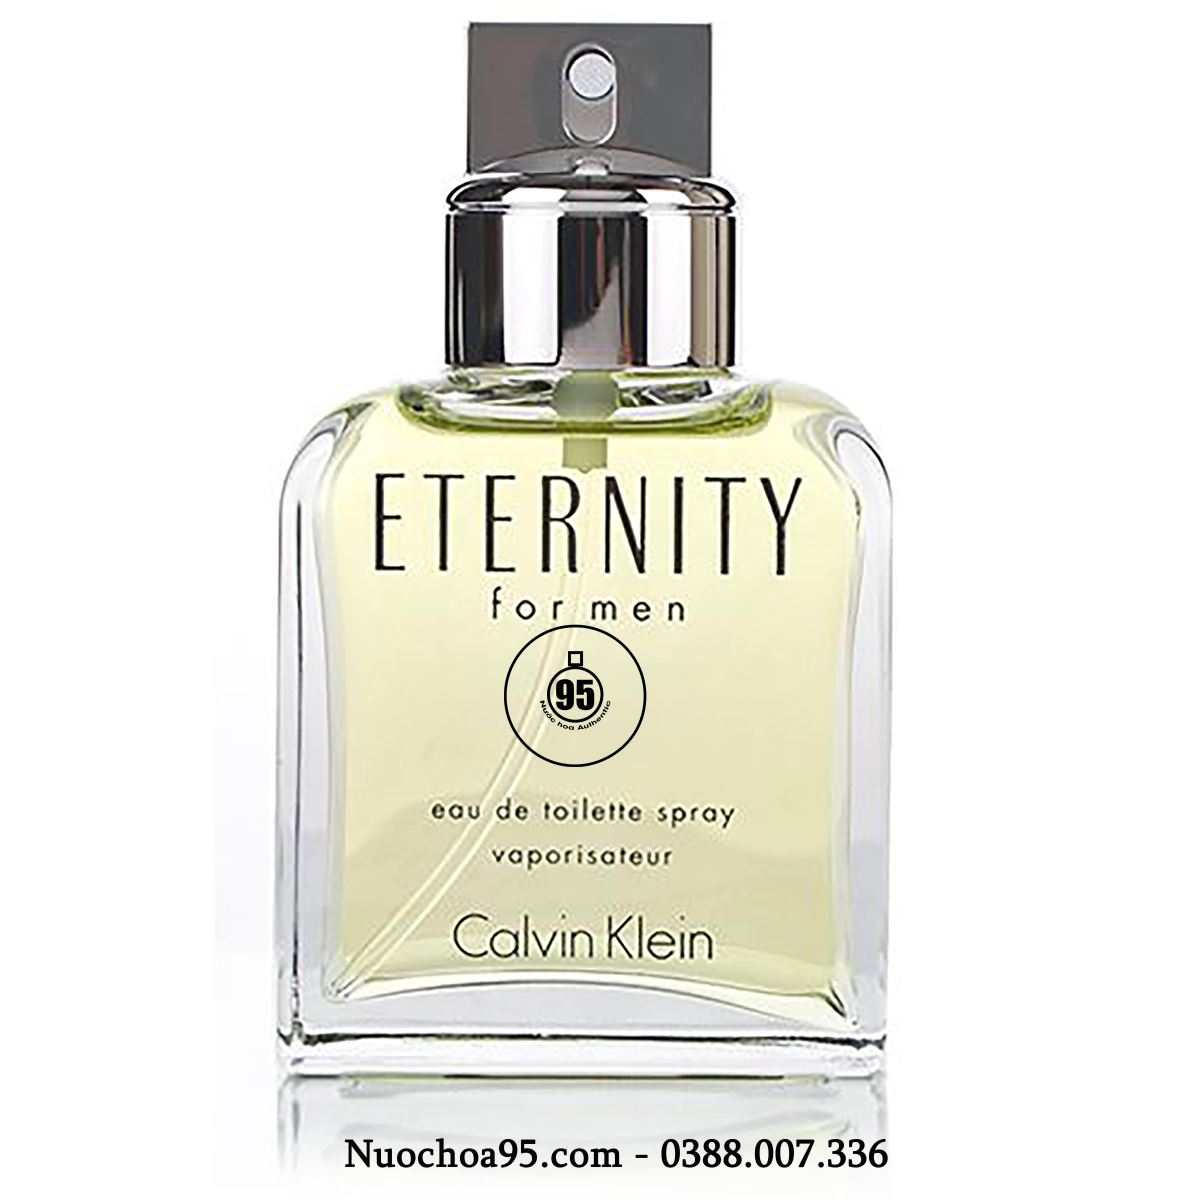 Nước hoa CK Eternity For Men - Ảnh 1